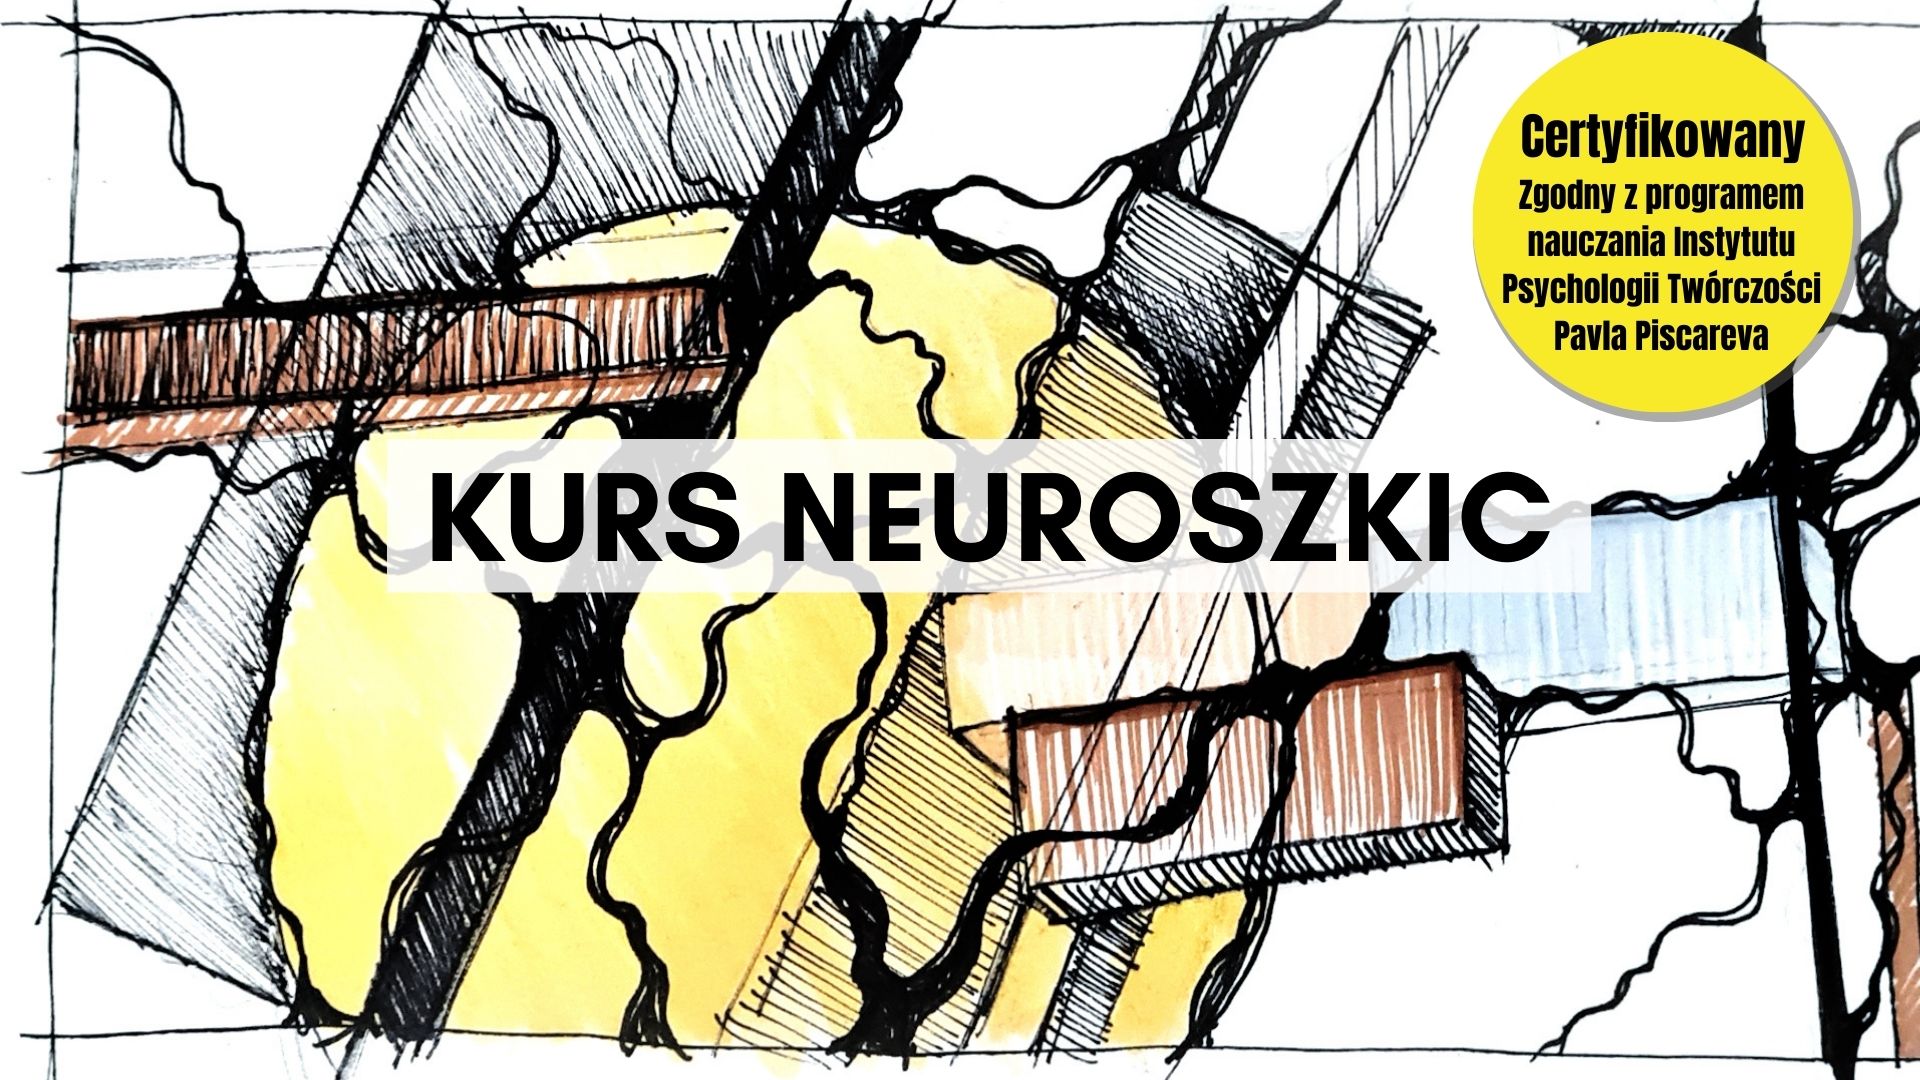 Neuroszkic - kurs certyfikowany